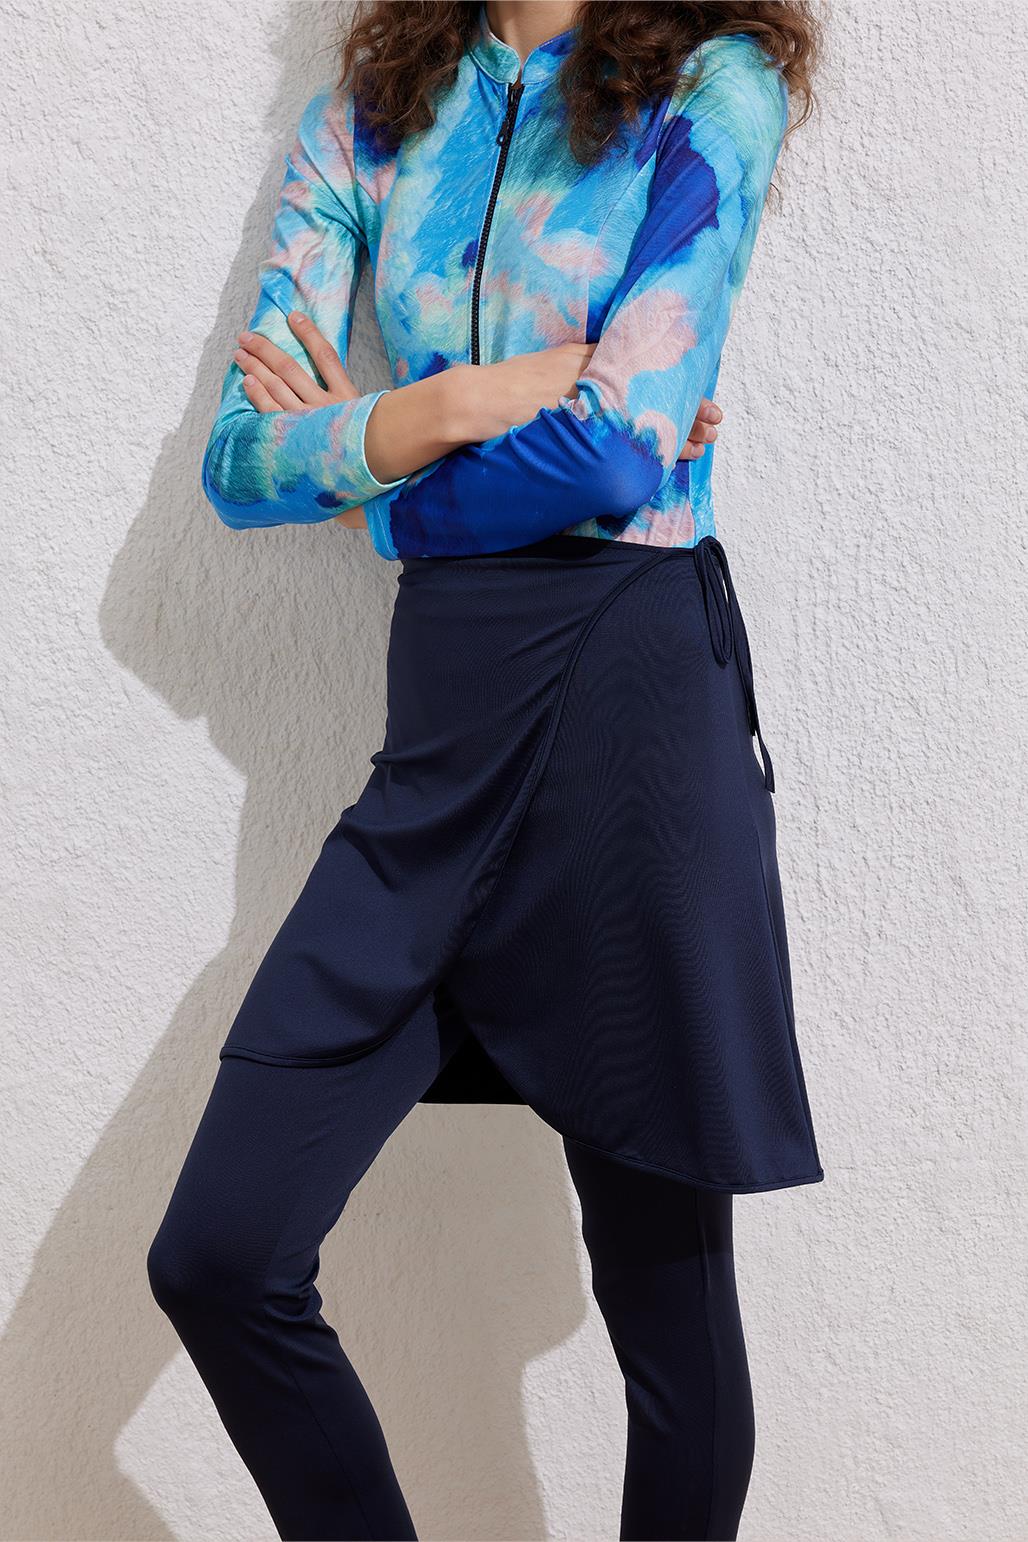 Modest Swimwear Connectable Skirt Navy Blue